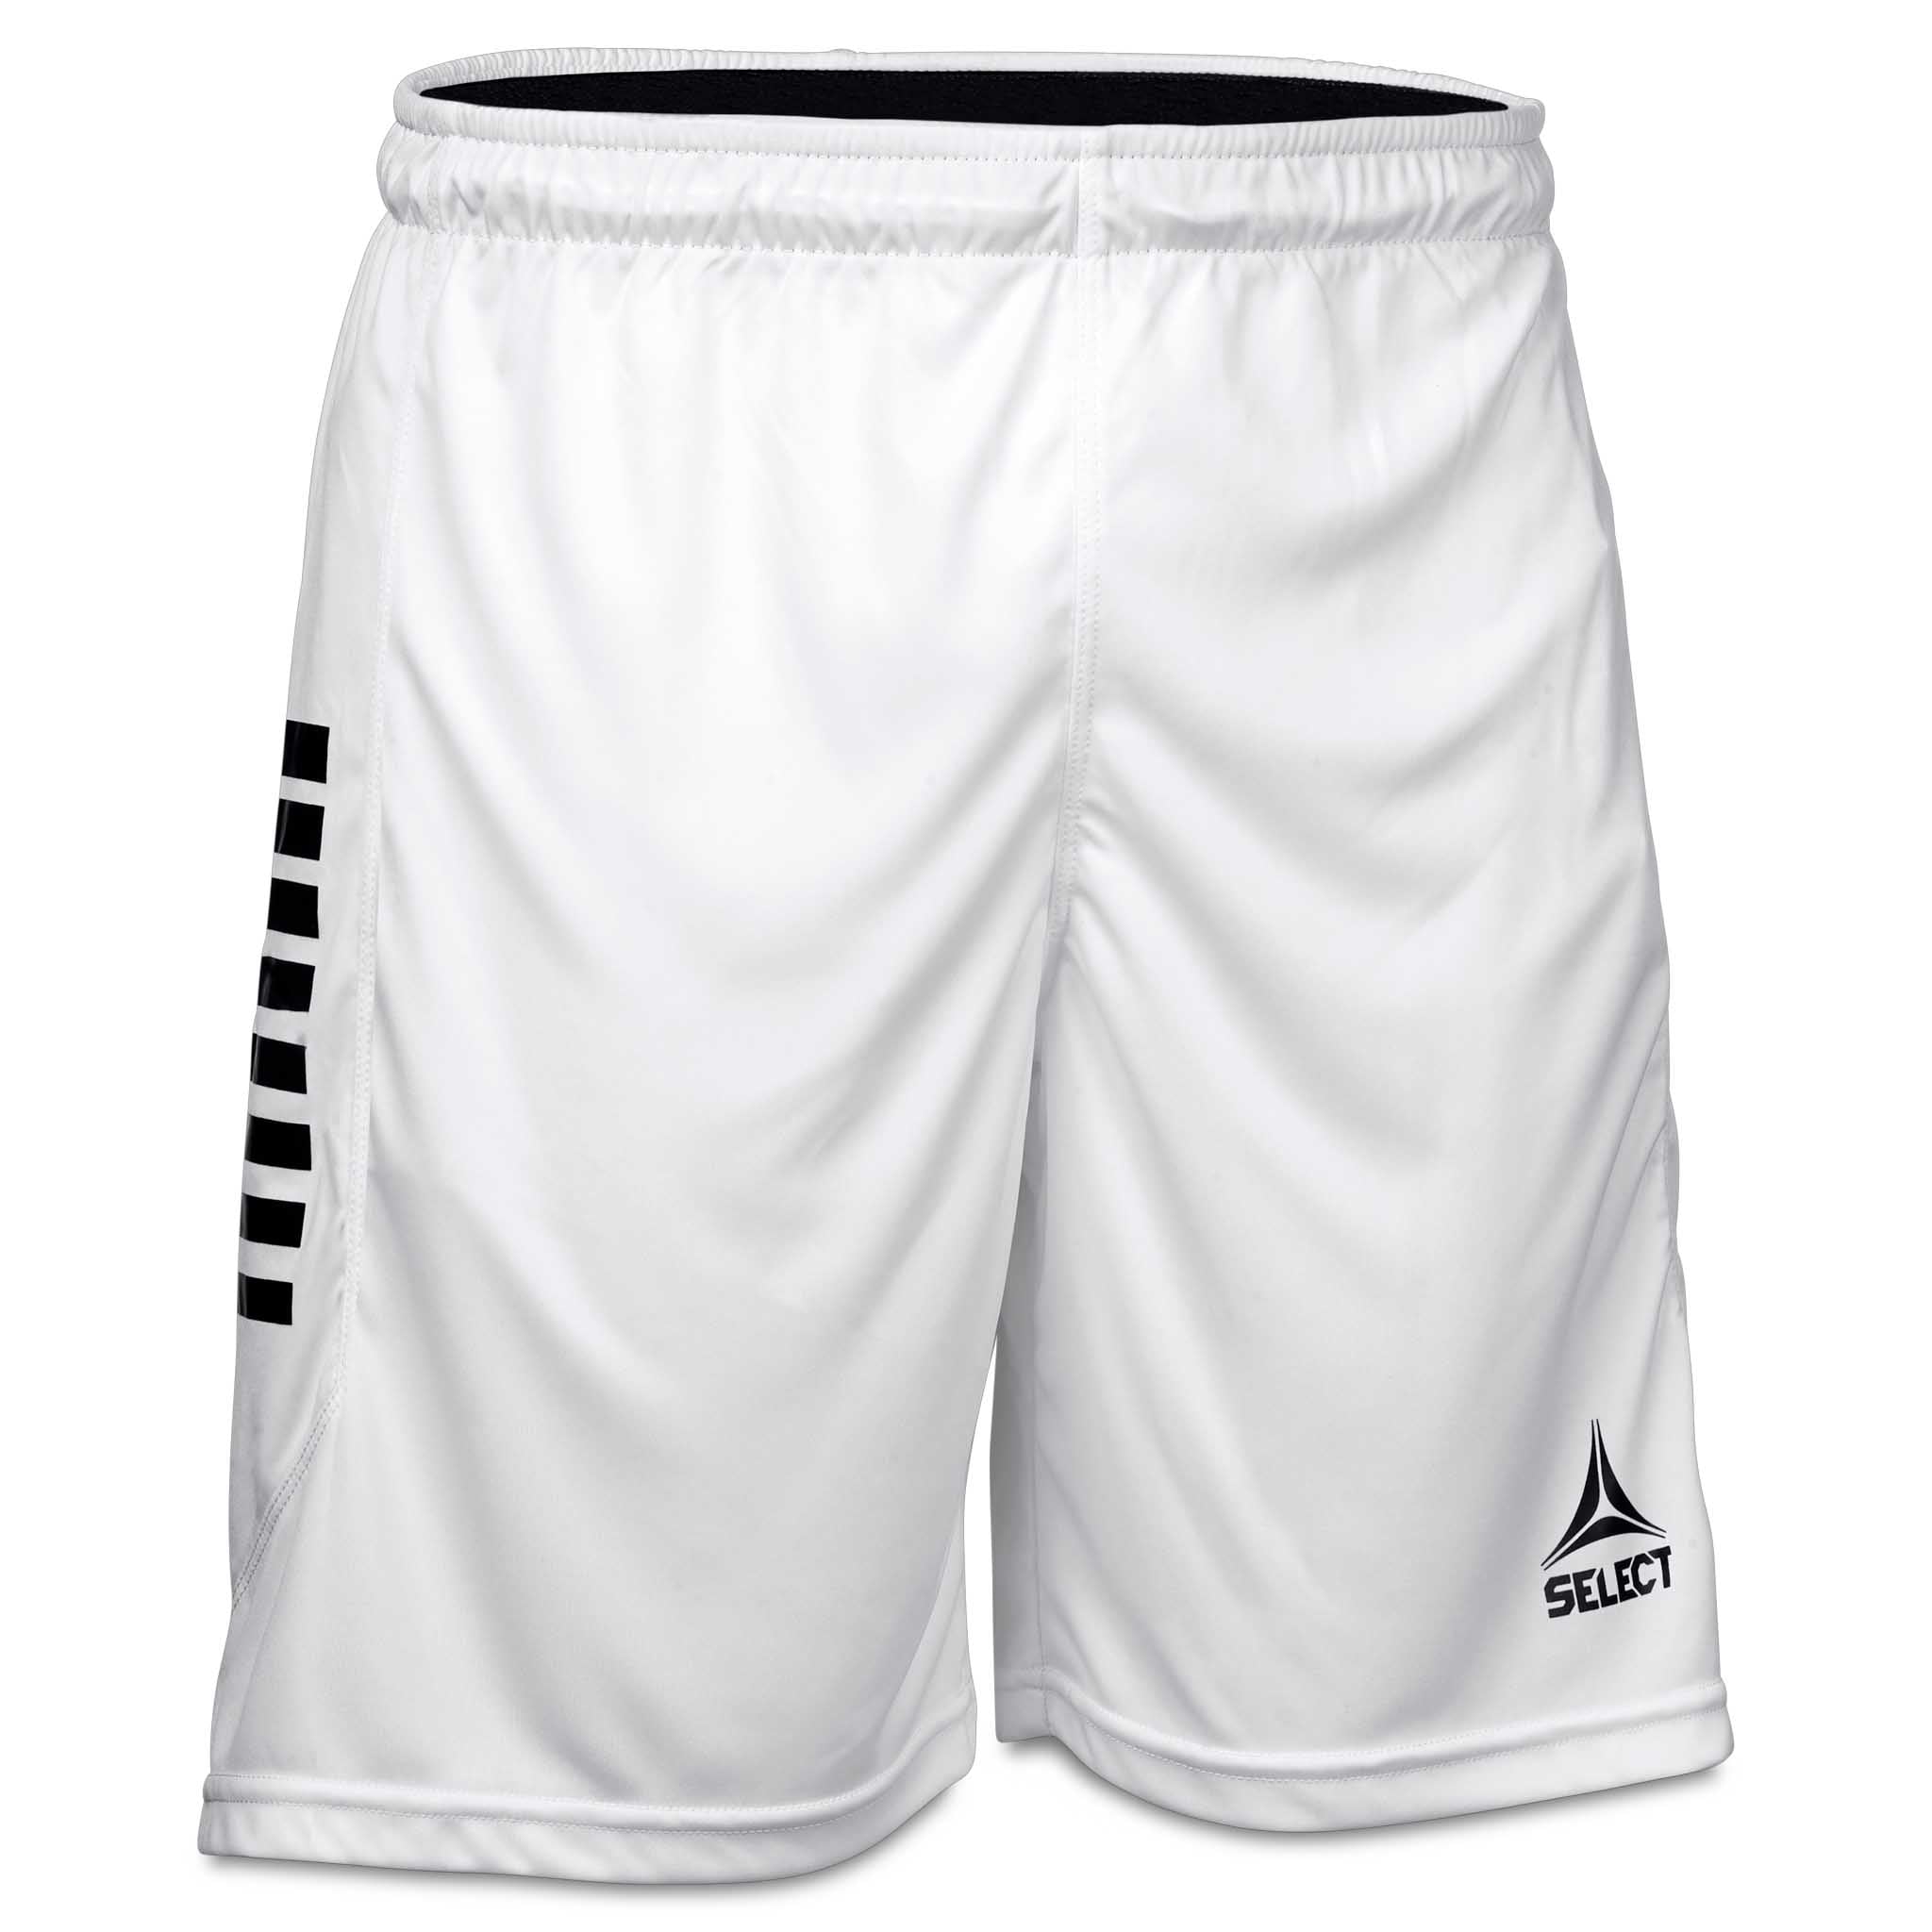 Monaco shorts - Børn #farve_hvid/sort